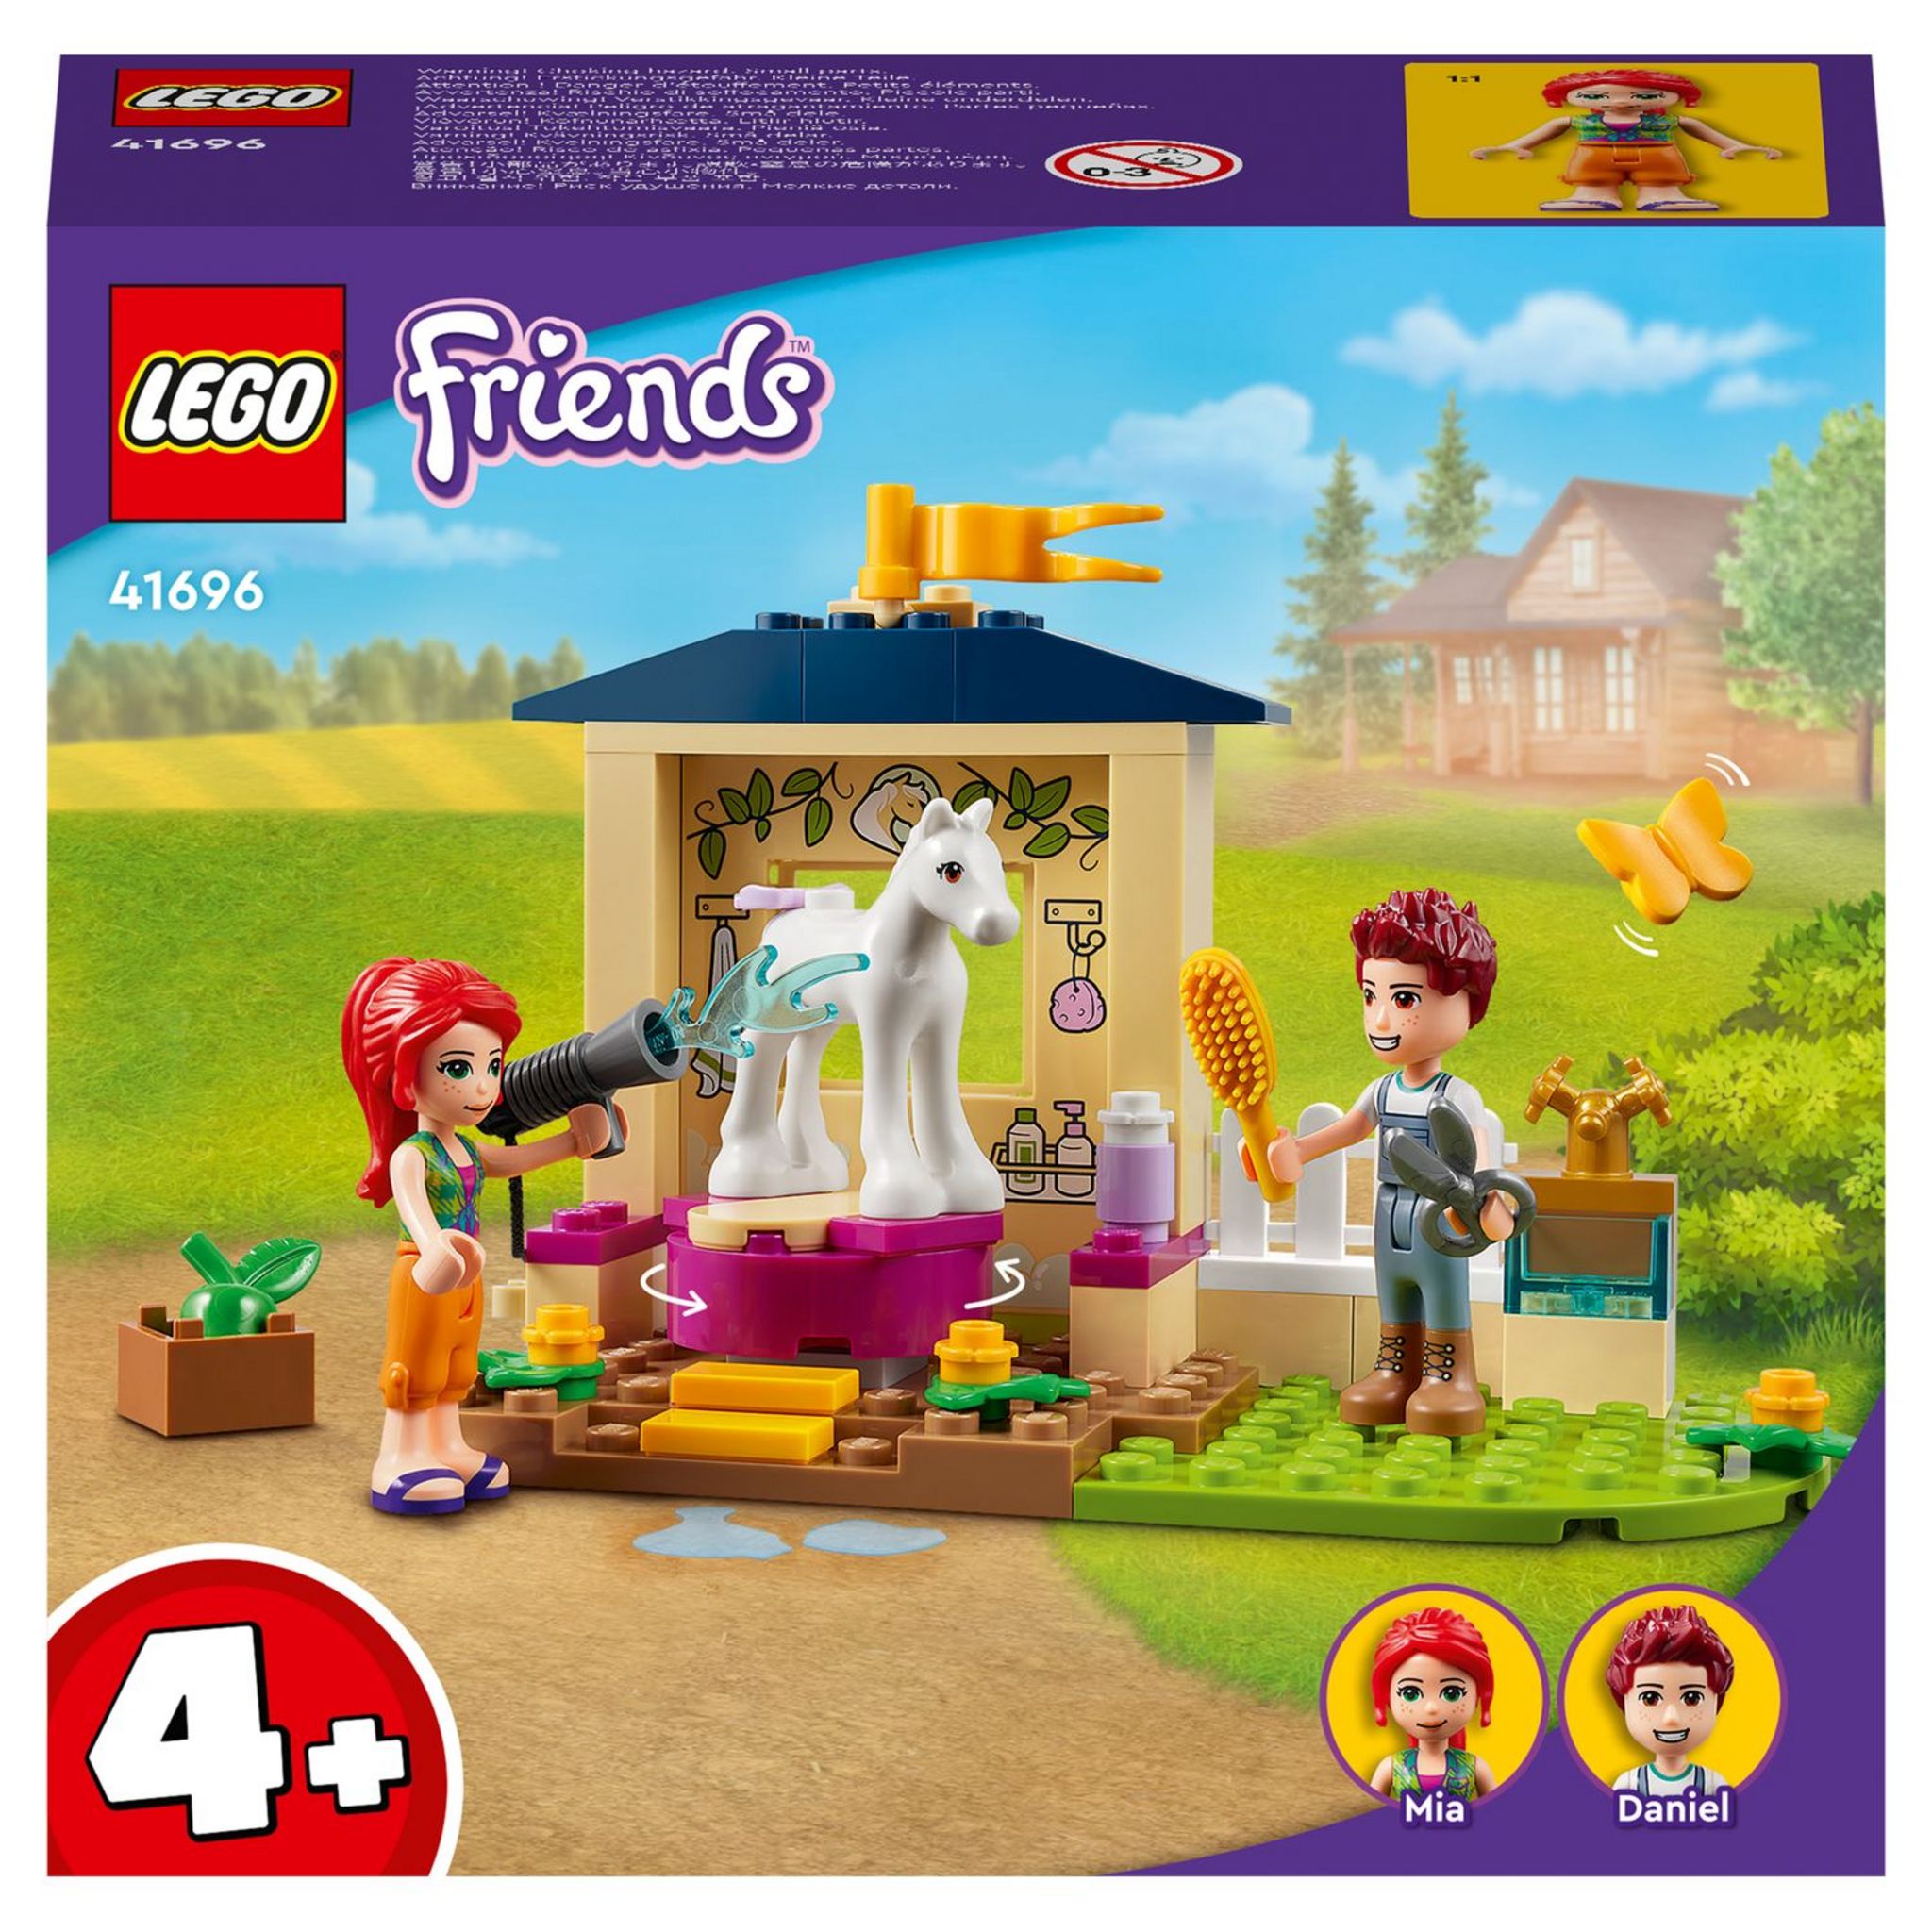 LEGO® Friends 41746 Le Dressage Équestre, Jouet de Chevaux et